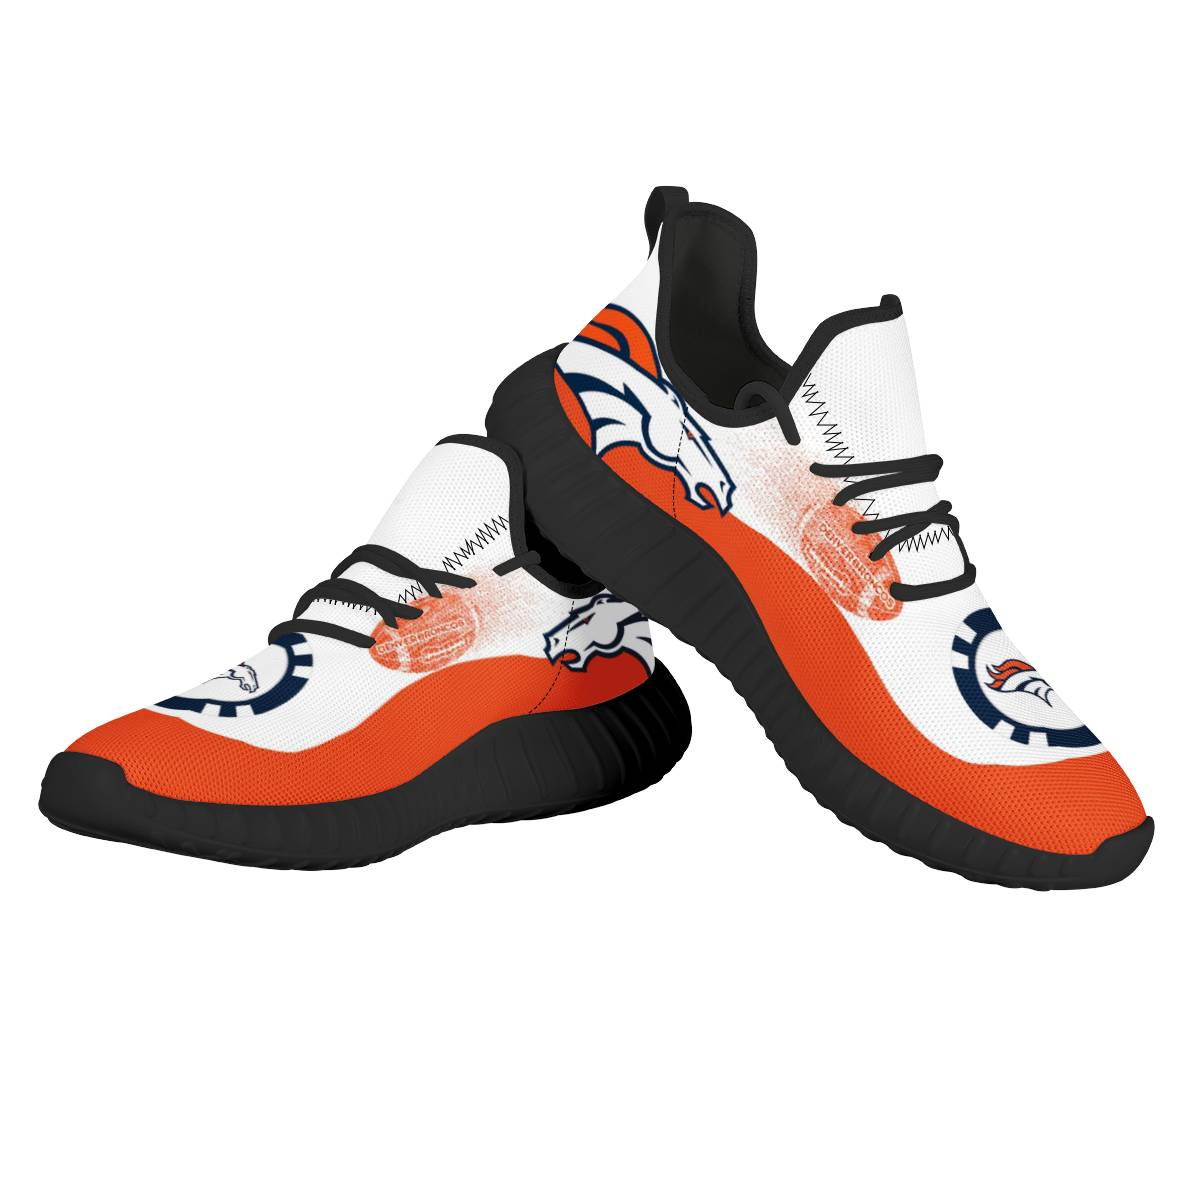 Women's Denver Broncos Mesh Knit Sneakers/Shoes 011